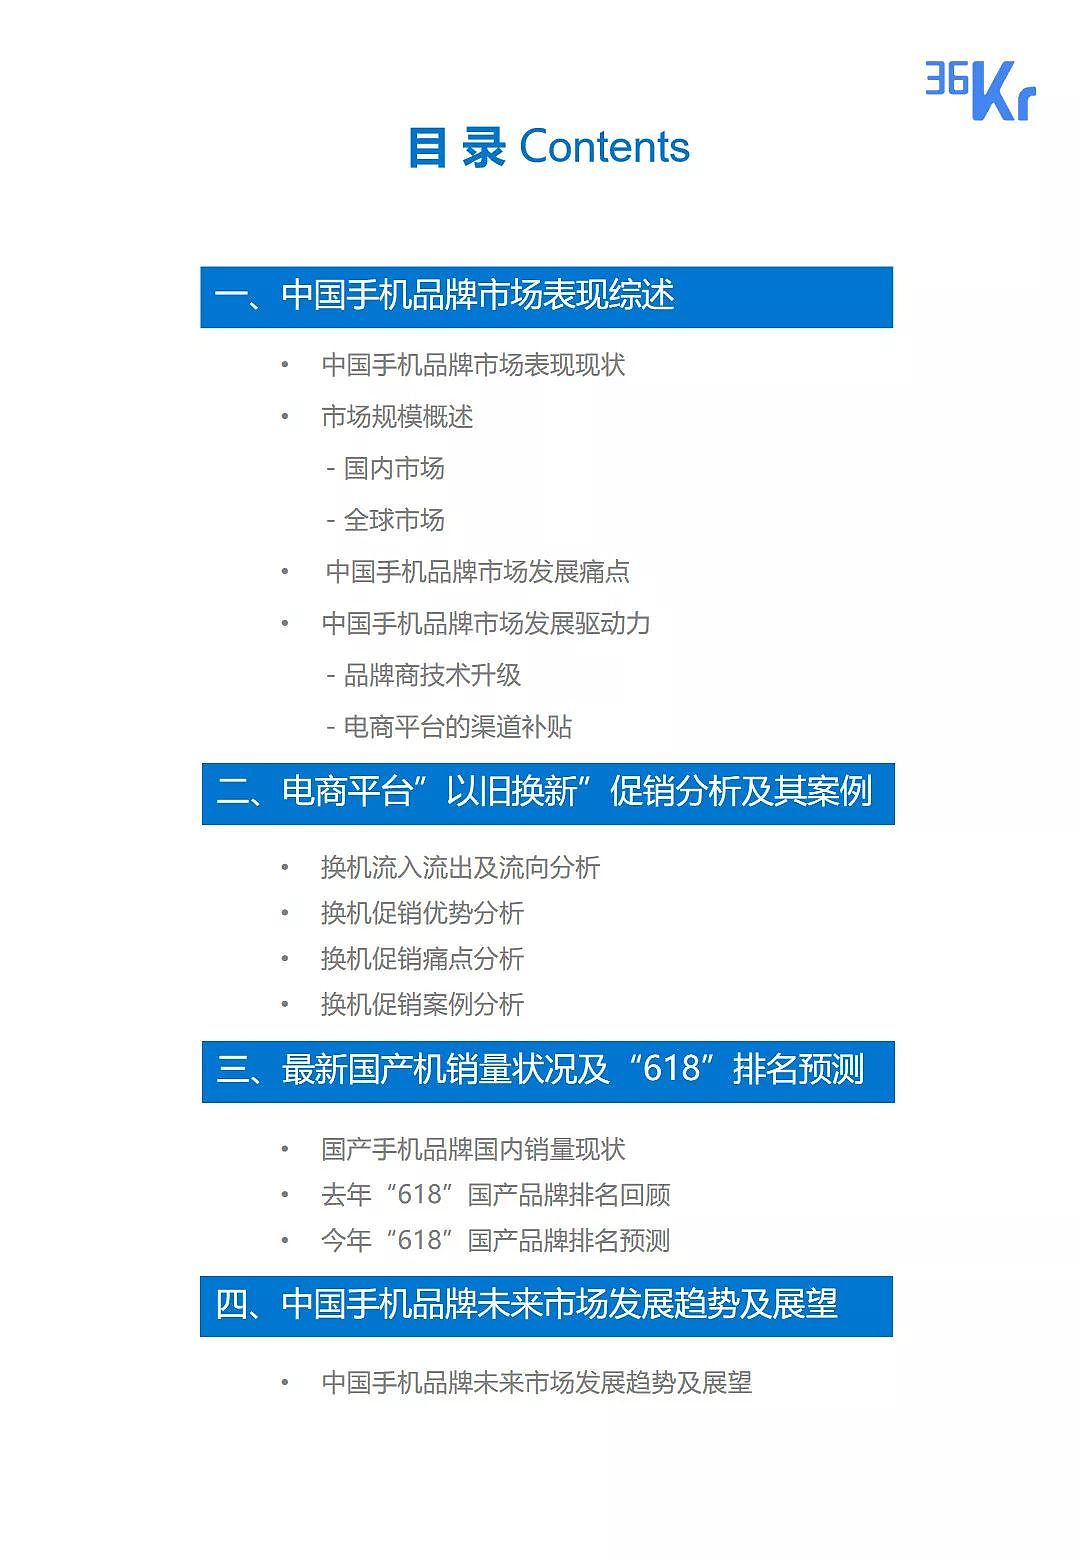 中国手机品牌市场营销研究报告 | 36氪研究 - 4